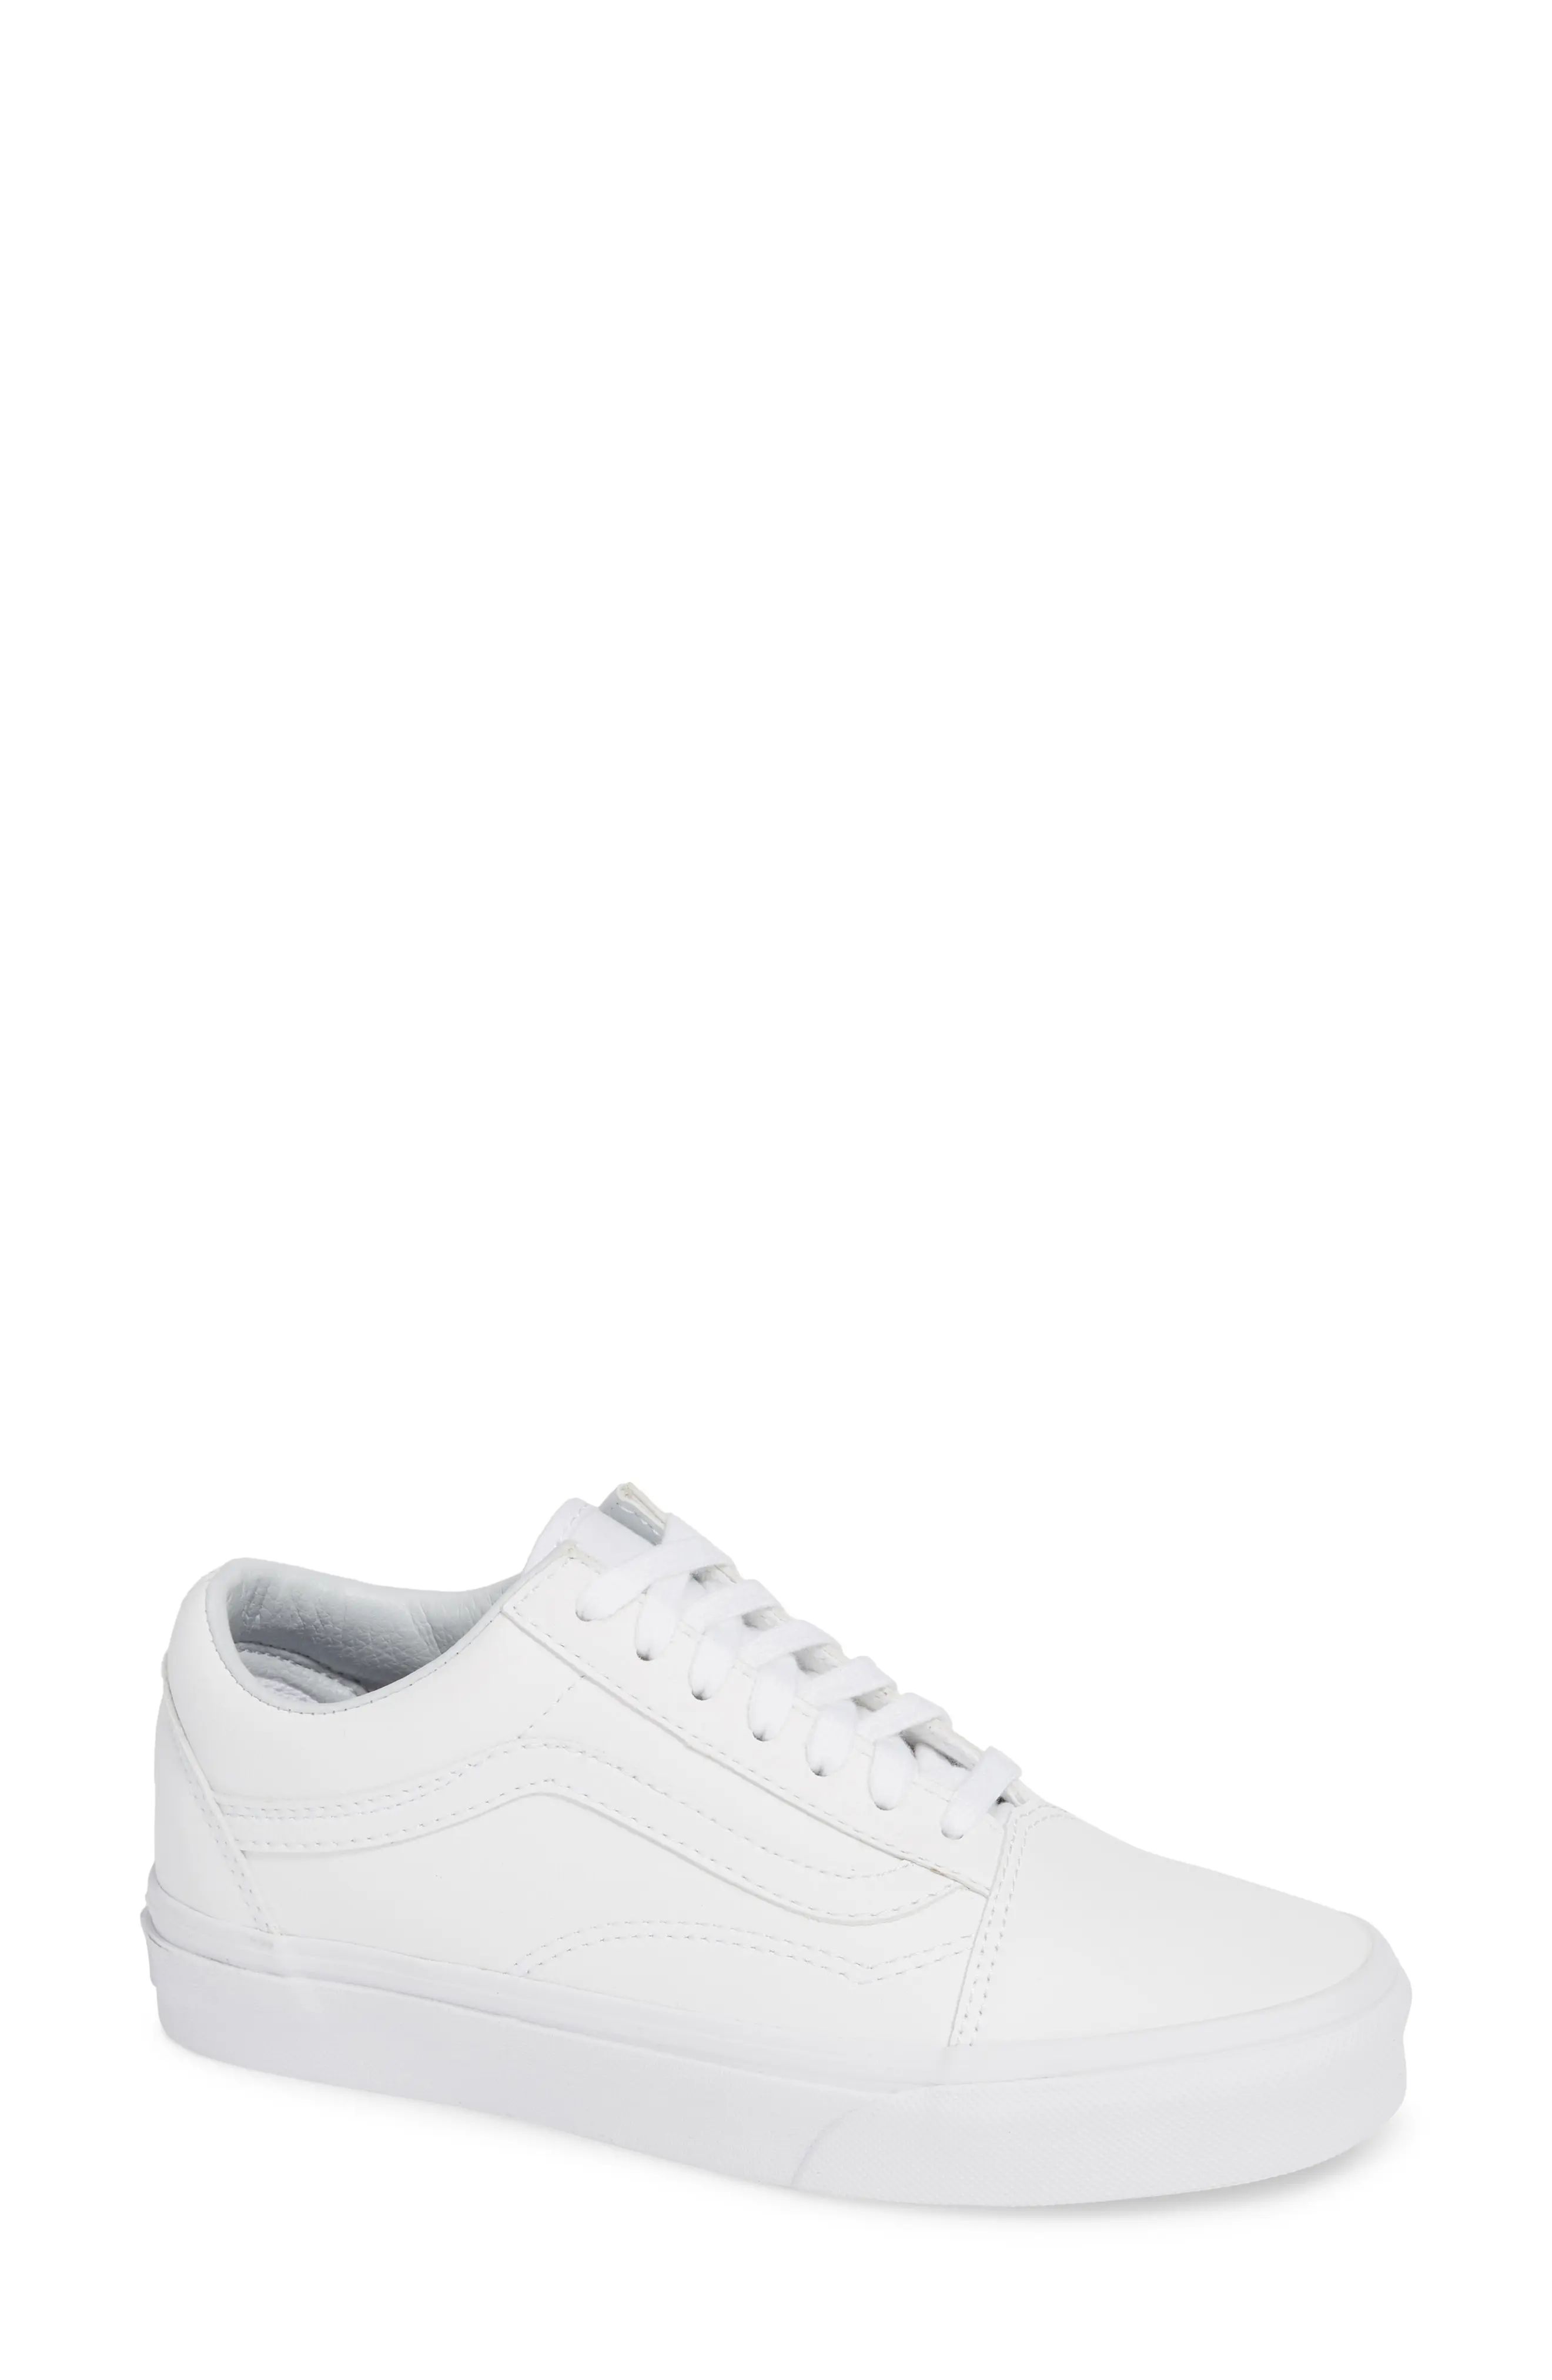 Women's Vans Old Skool Tumble Sneaker, Size 5 M - White | Nordstrom